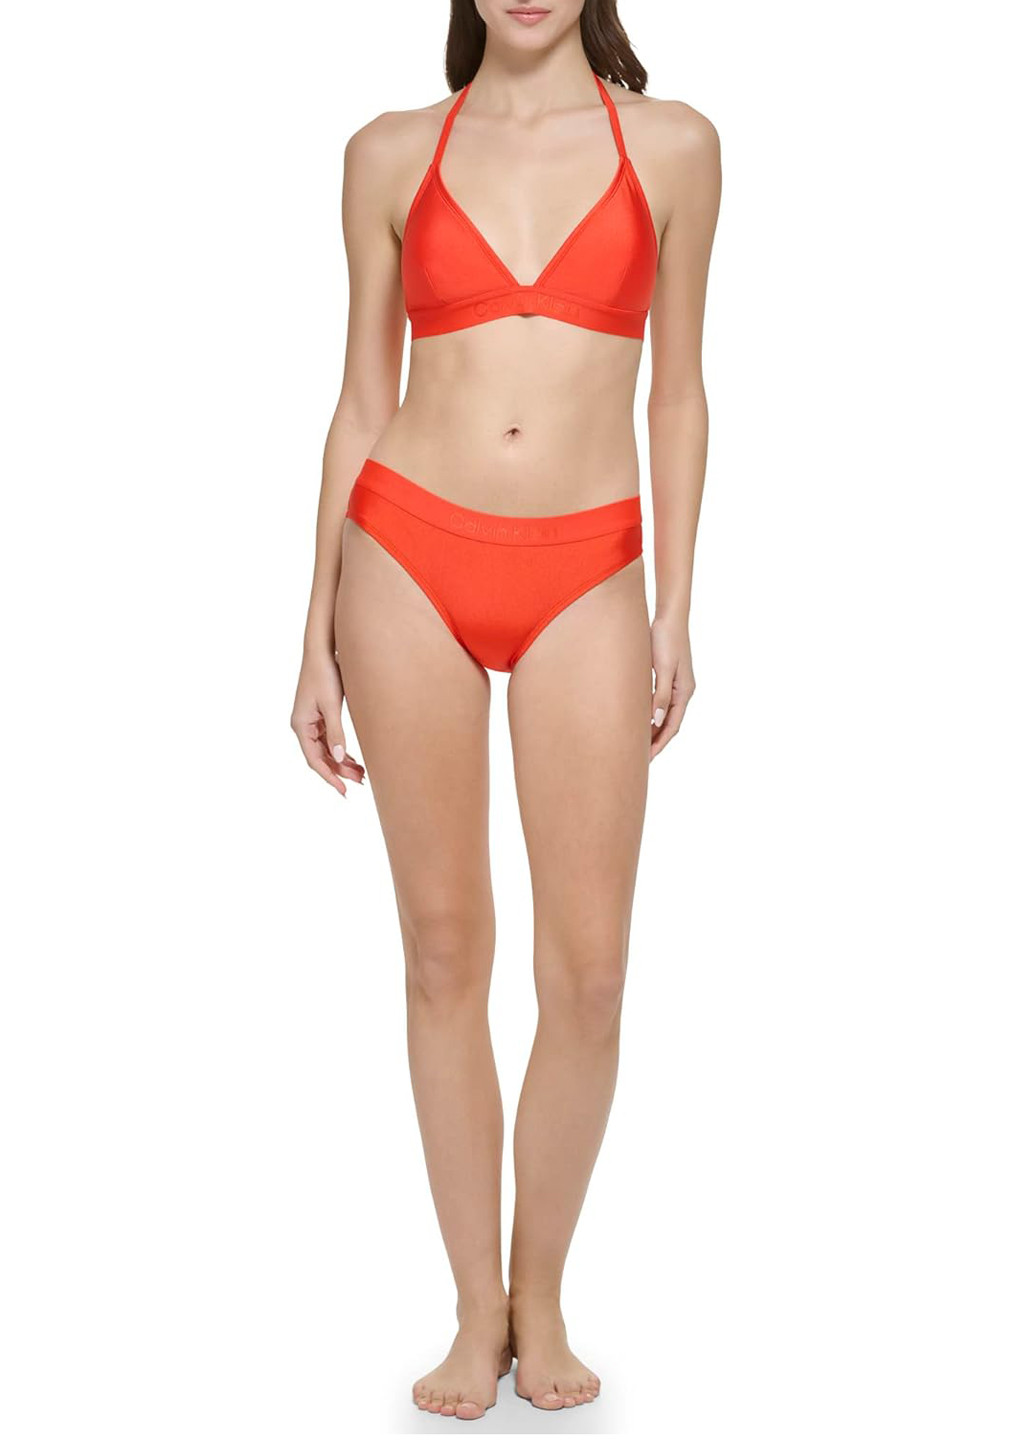 Червоний літній купальник (ліф, трусики) роздільний, бікіні Calvin Klein